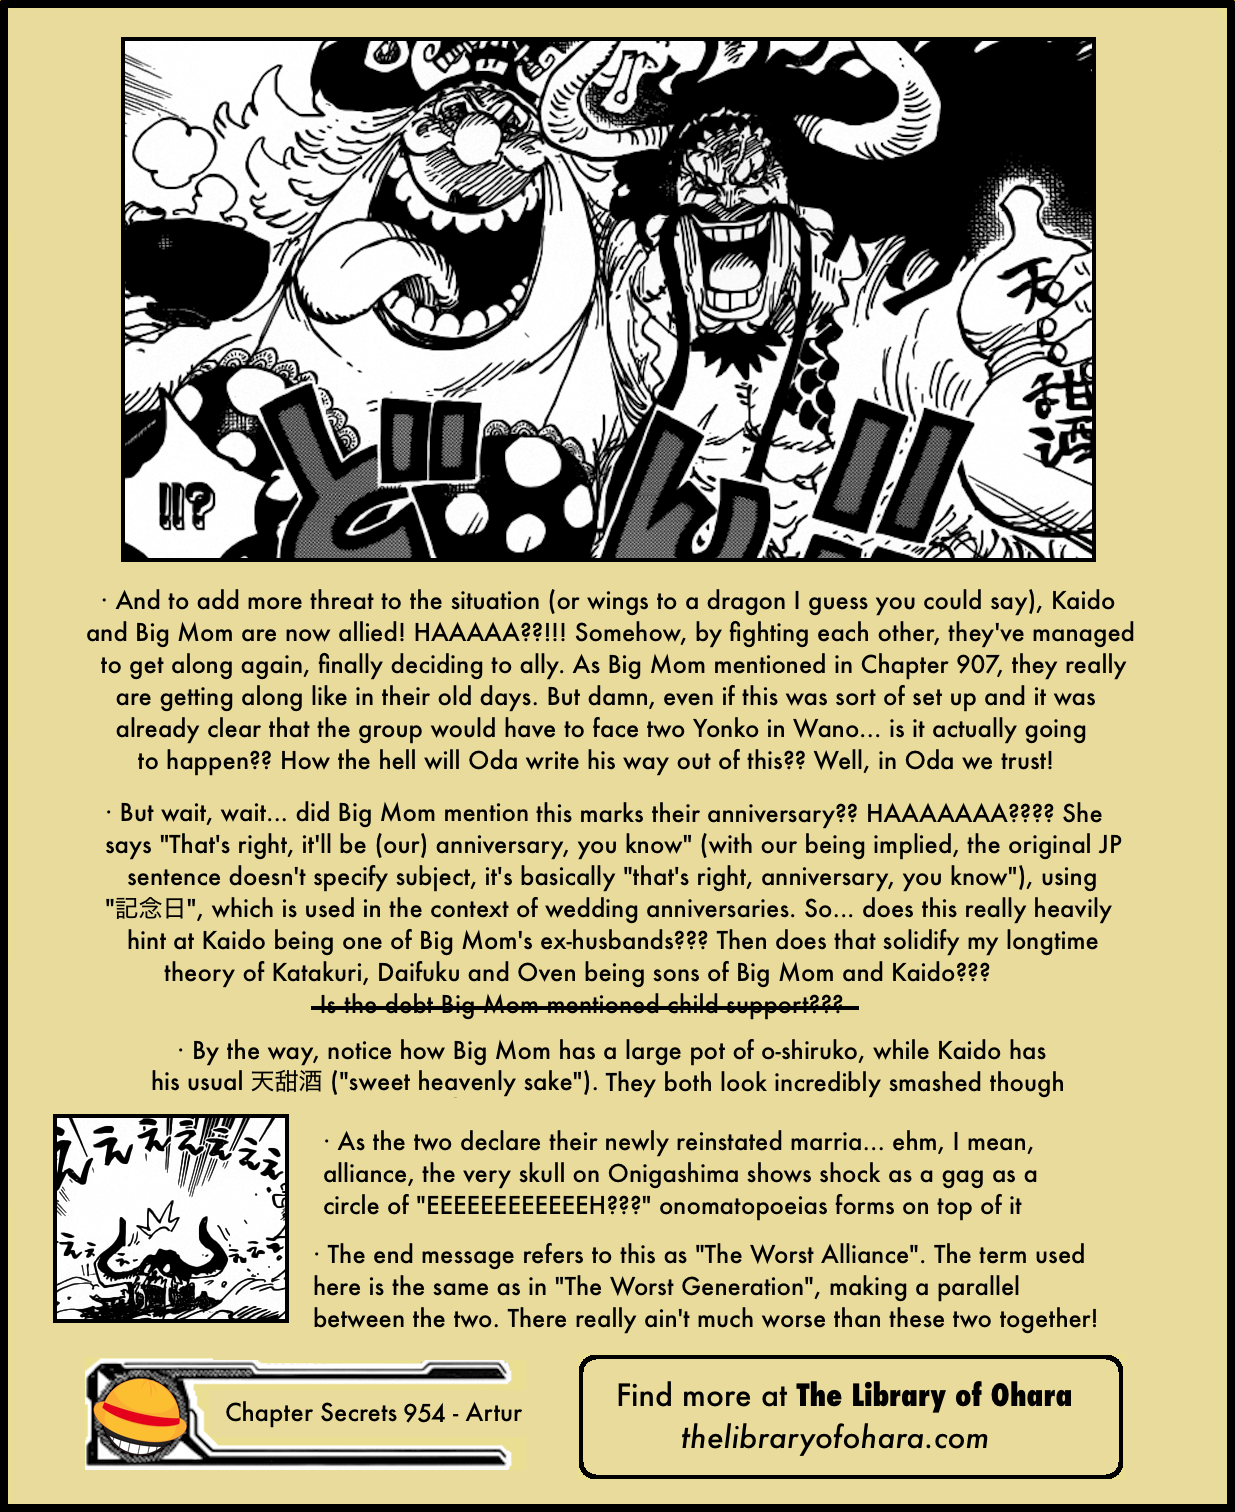 Narration, One Piece Wiki